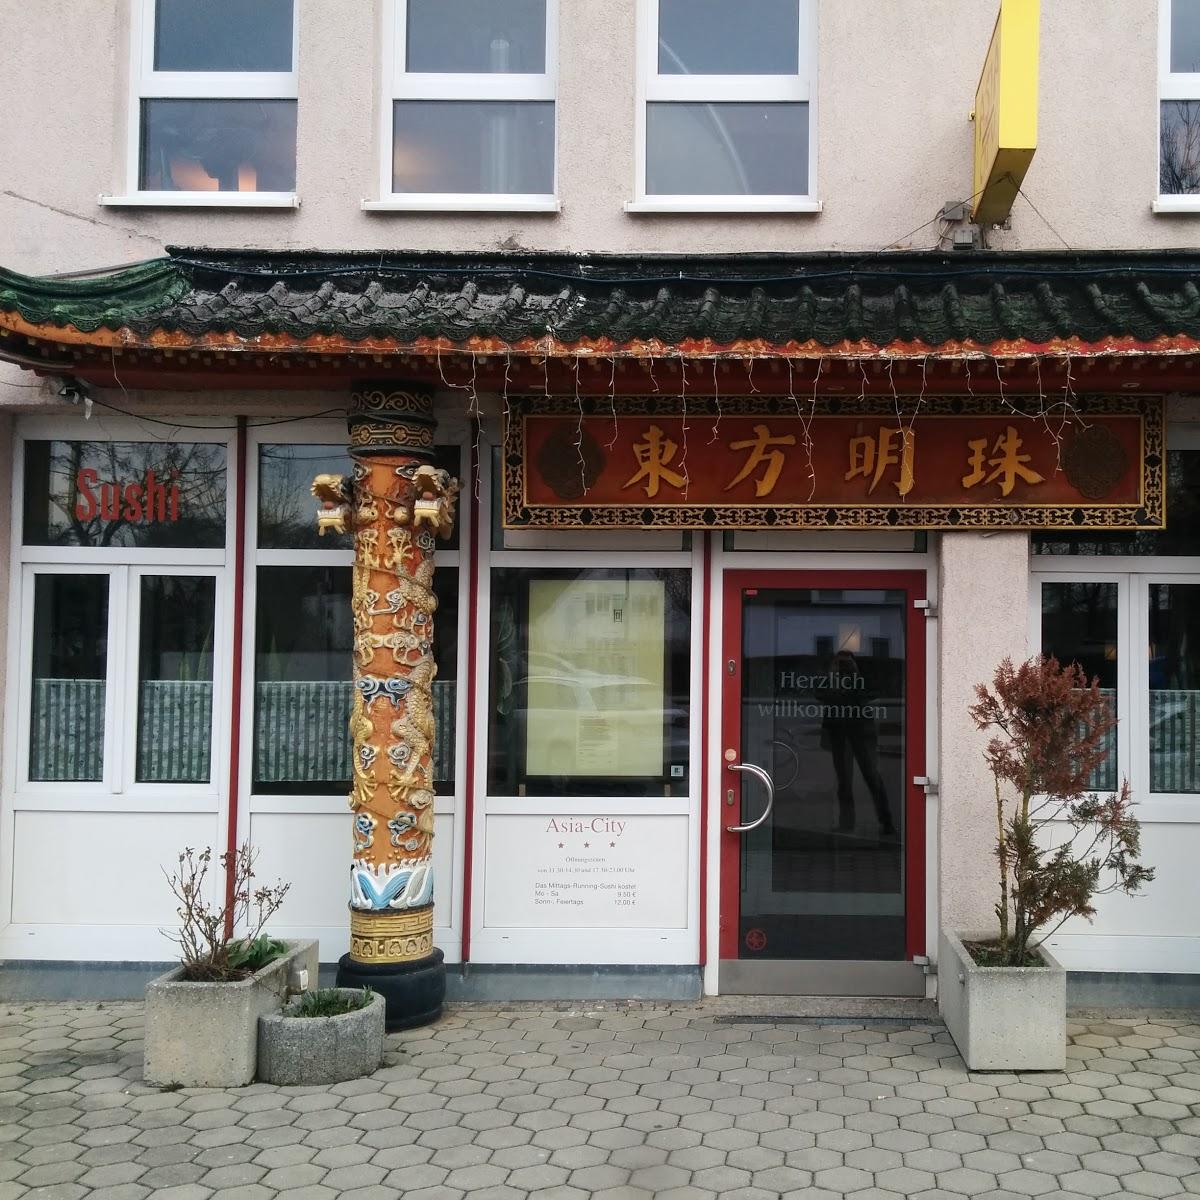 Restaurant "Restaurant Asia City" in Karlsfeld